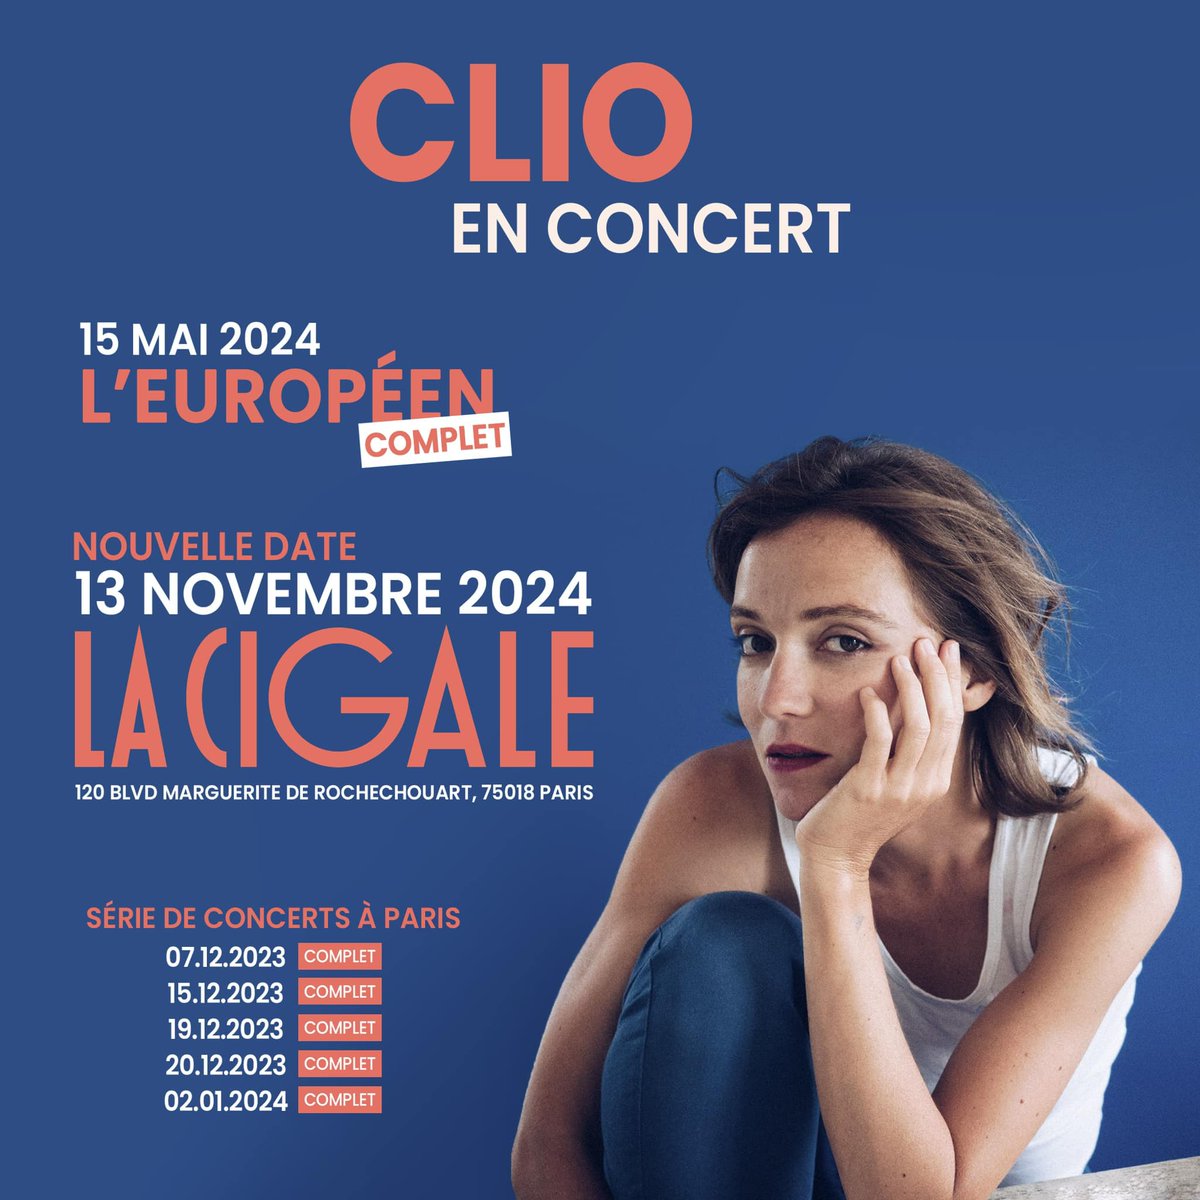 Clio at La Cigale Tickets